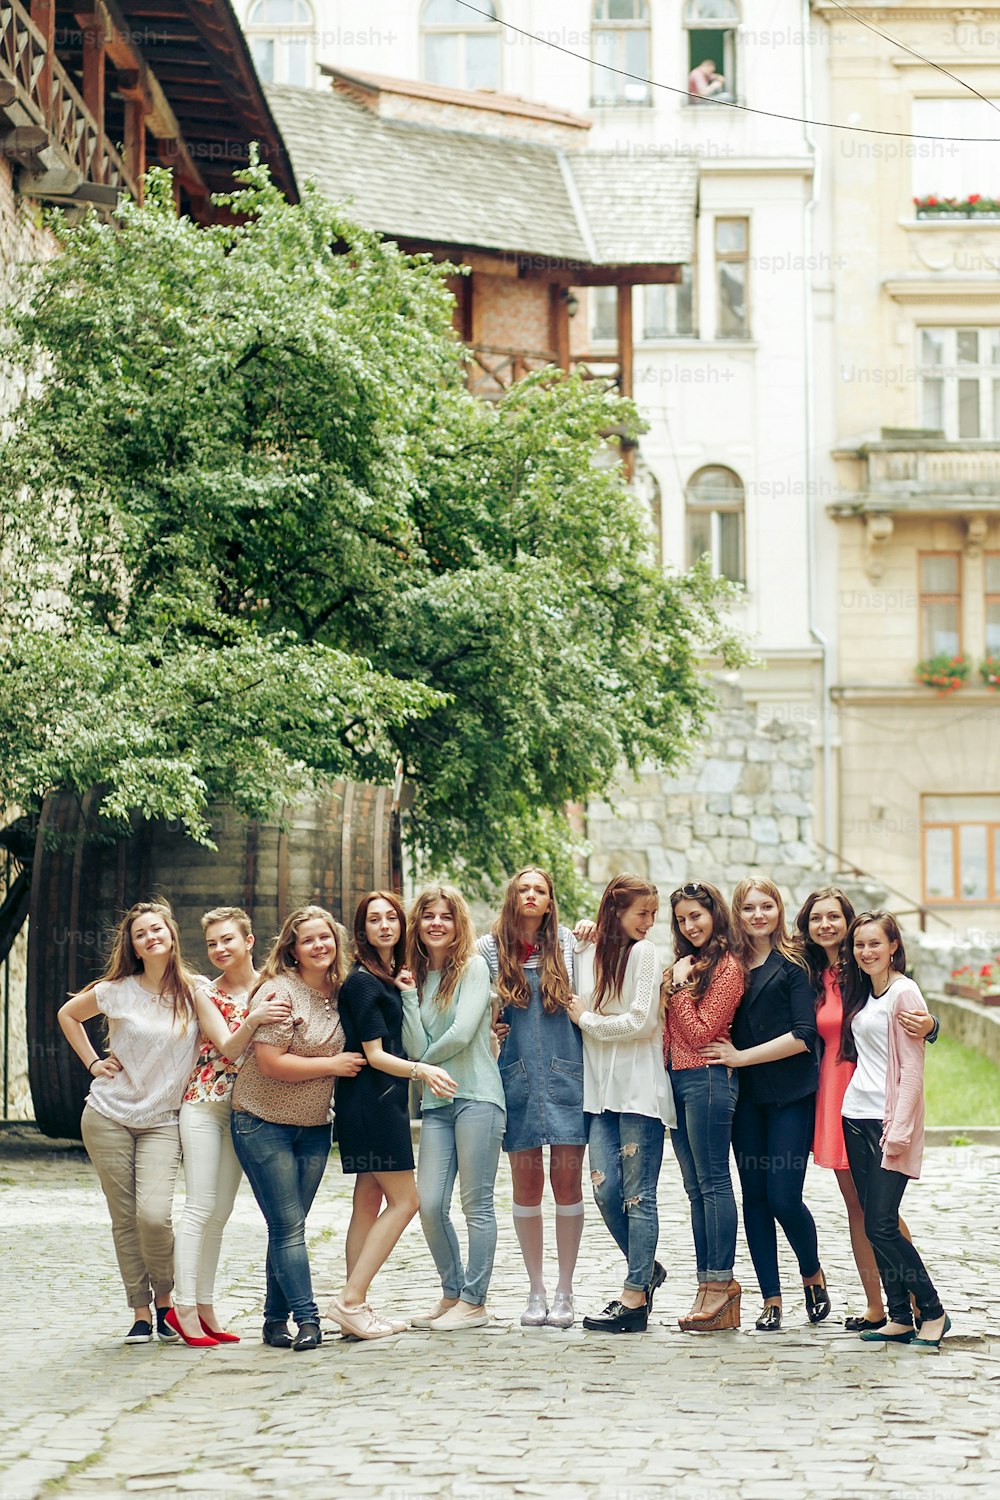 오래된 유럽 도시 거리, 여행 또는 축하 우정 개념, 행복의 순간을 배경으로 포즈를 취하는 행복한 세련된 여성 그룹